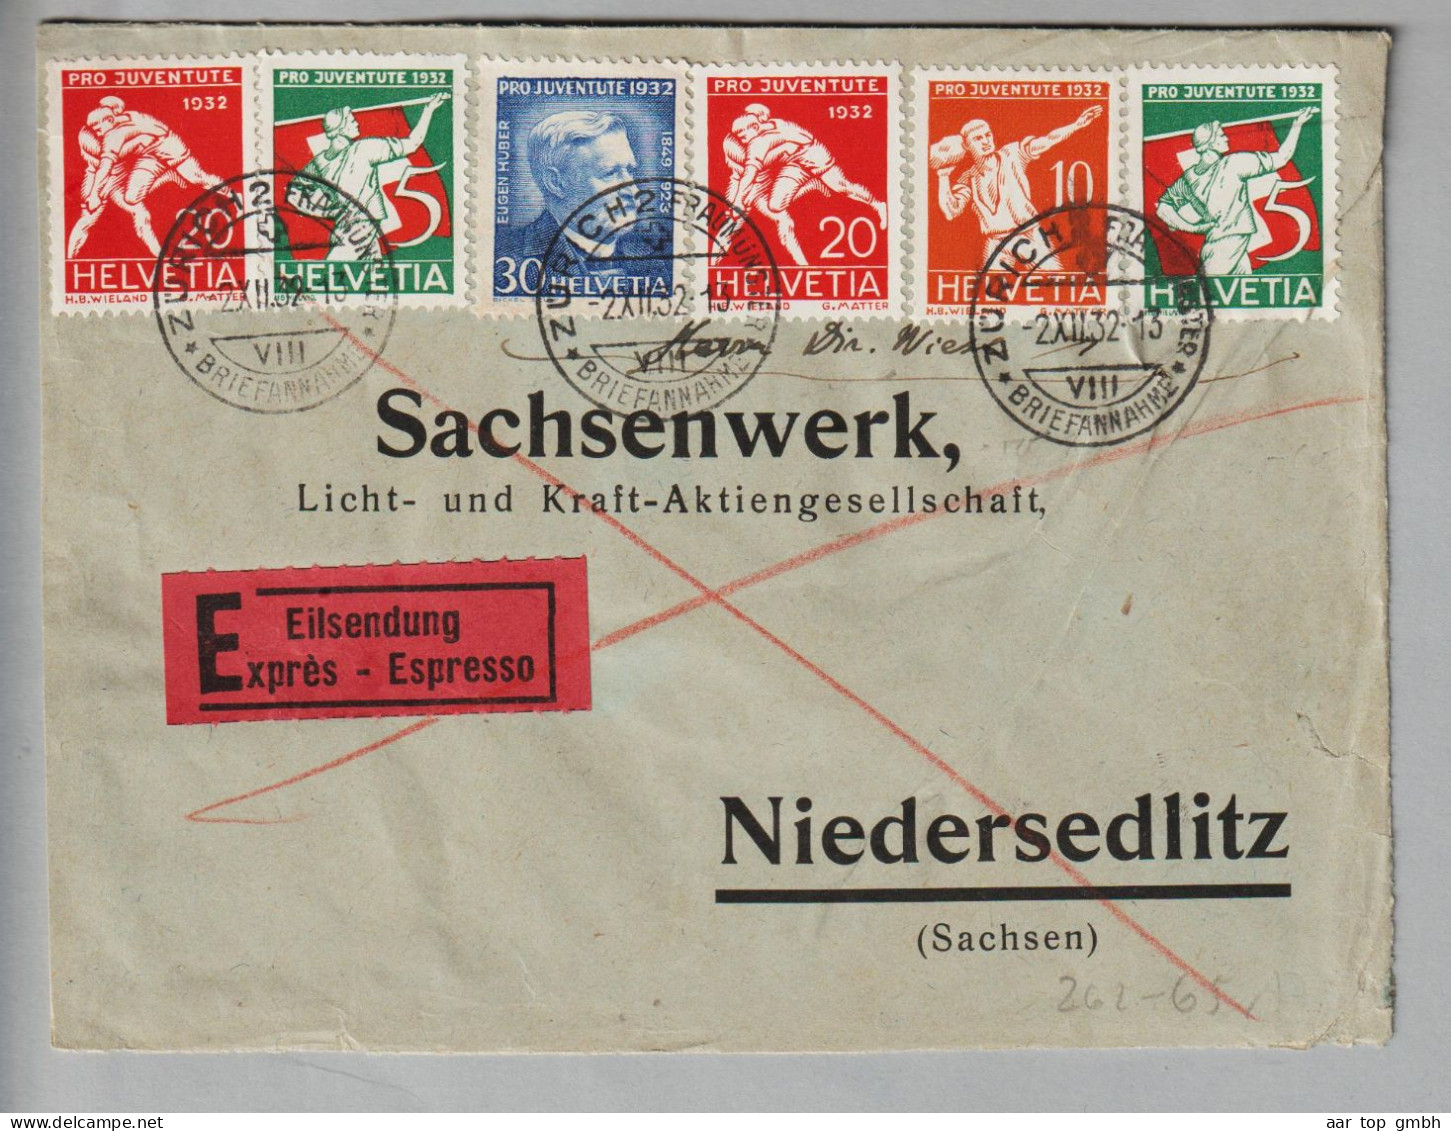 CH Pro Juventute 1932-12-02 Zürich2 Expressbrief Nach Niedersedlitz Satz PJ 1932 - Covers & Documents